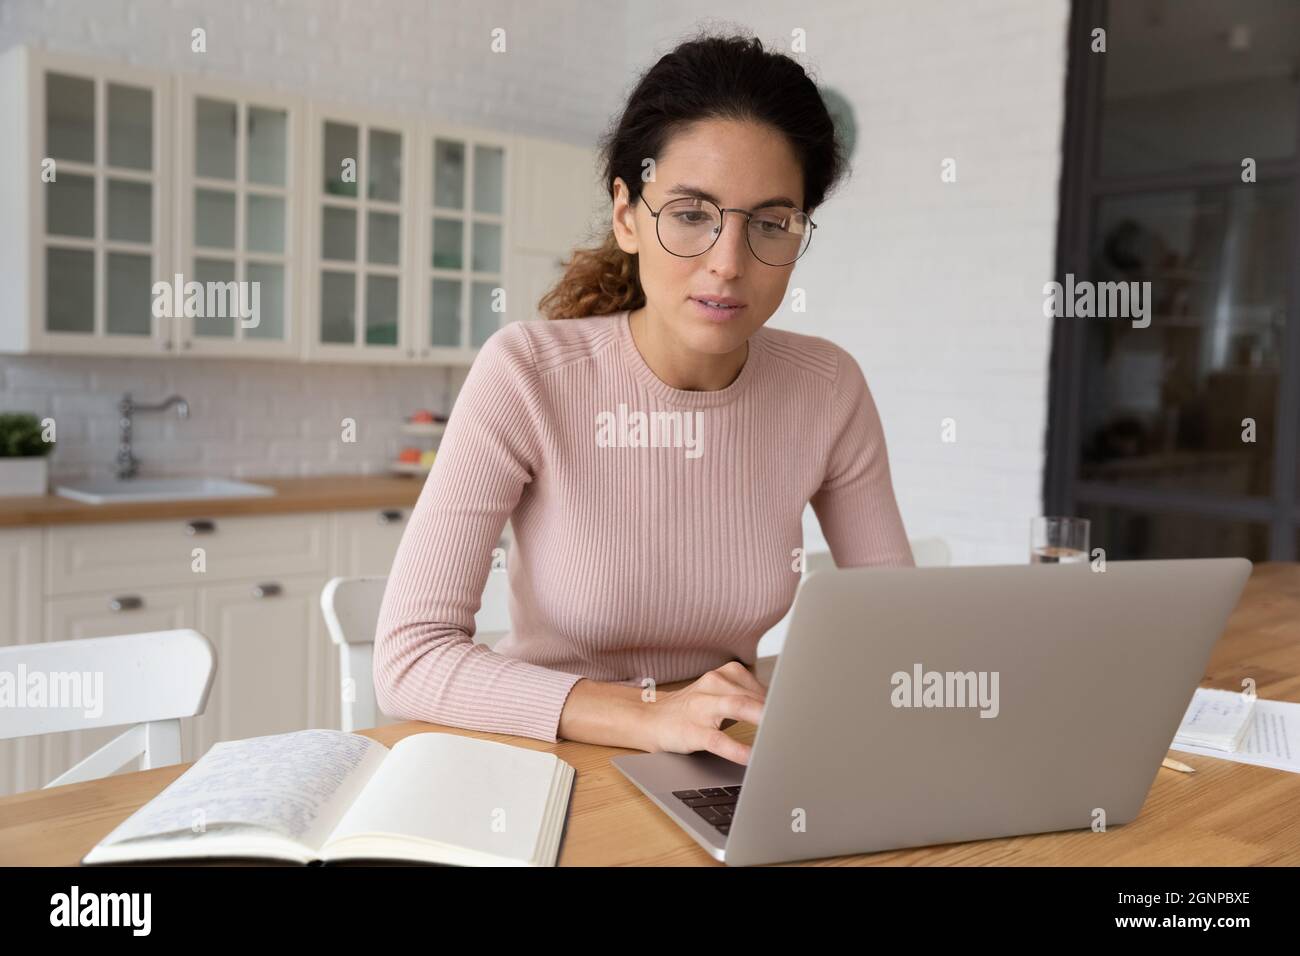 Une jeune femme pensive travaille sur un ordinateur portable Banque D'Images